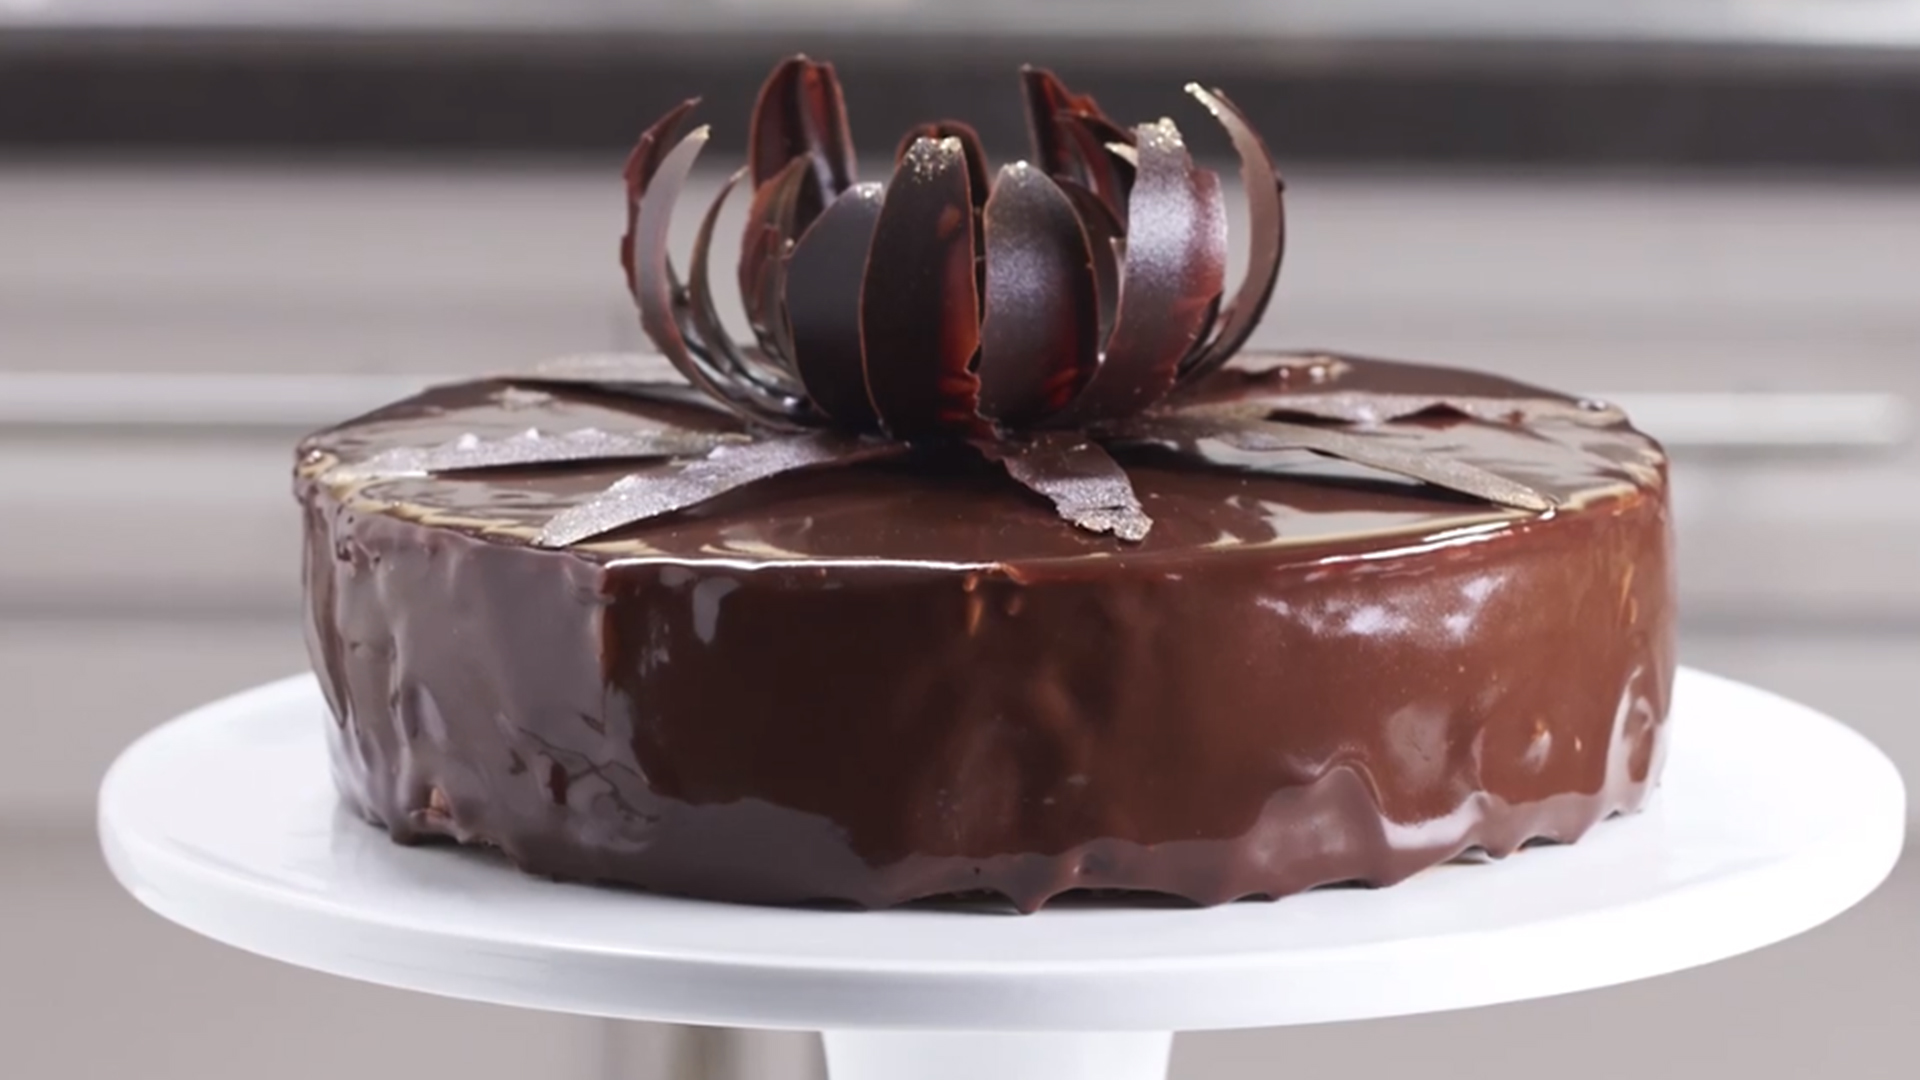 Cake design - décoration en isomalt - comment réaliser un cake Topper ?  Vidéo en français 